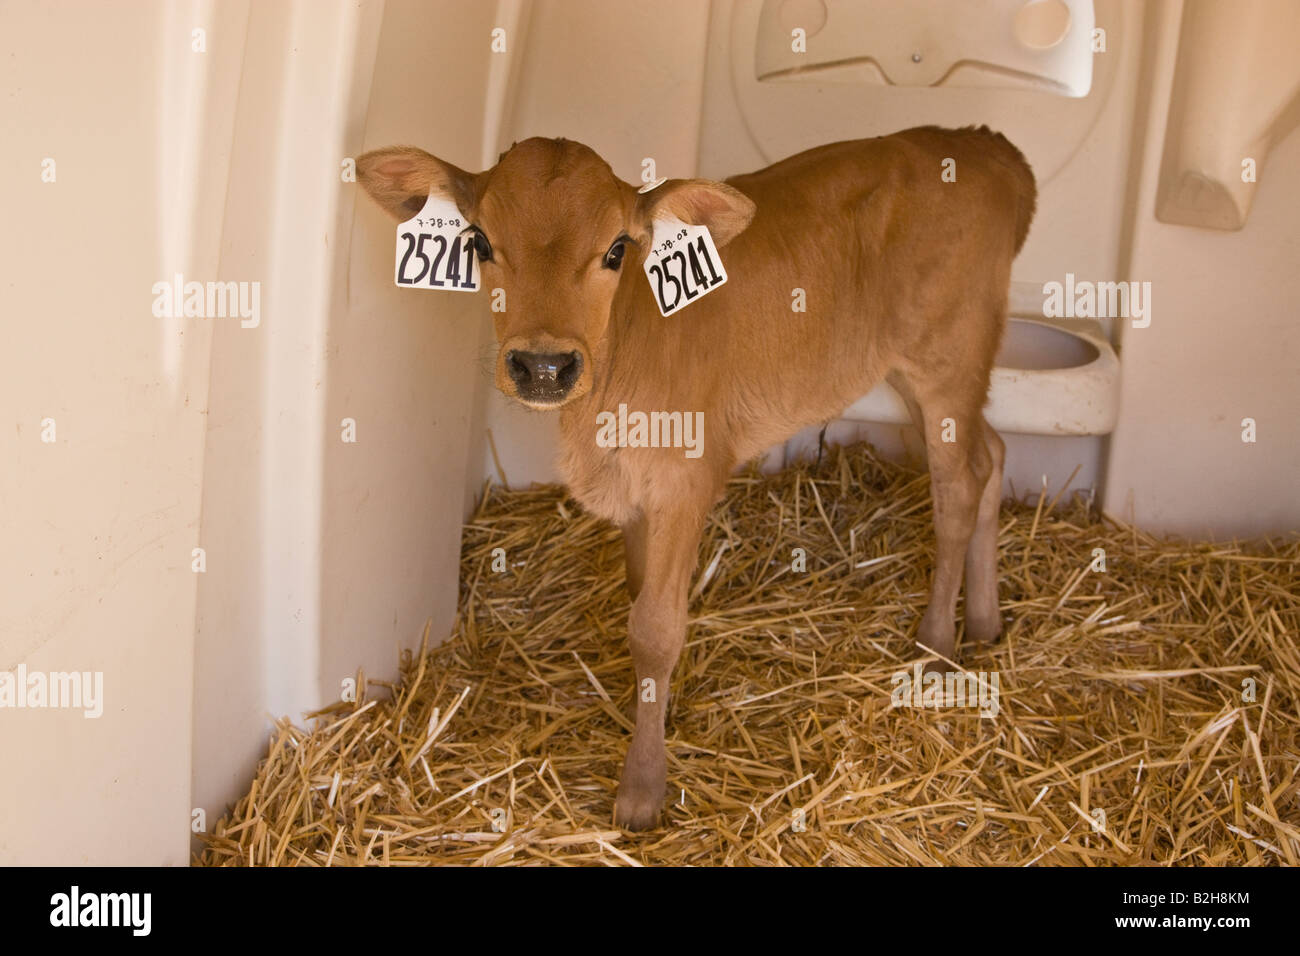 Newborn dairy calf standing in shelter. Stock Photo